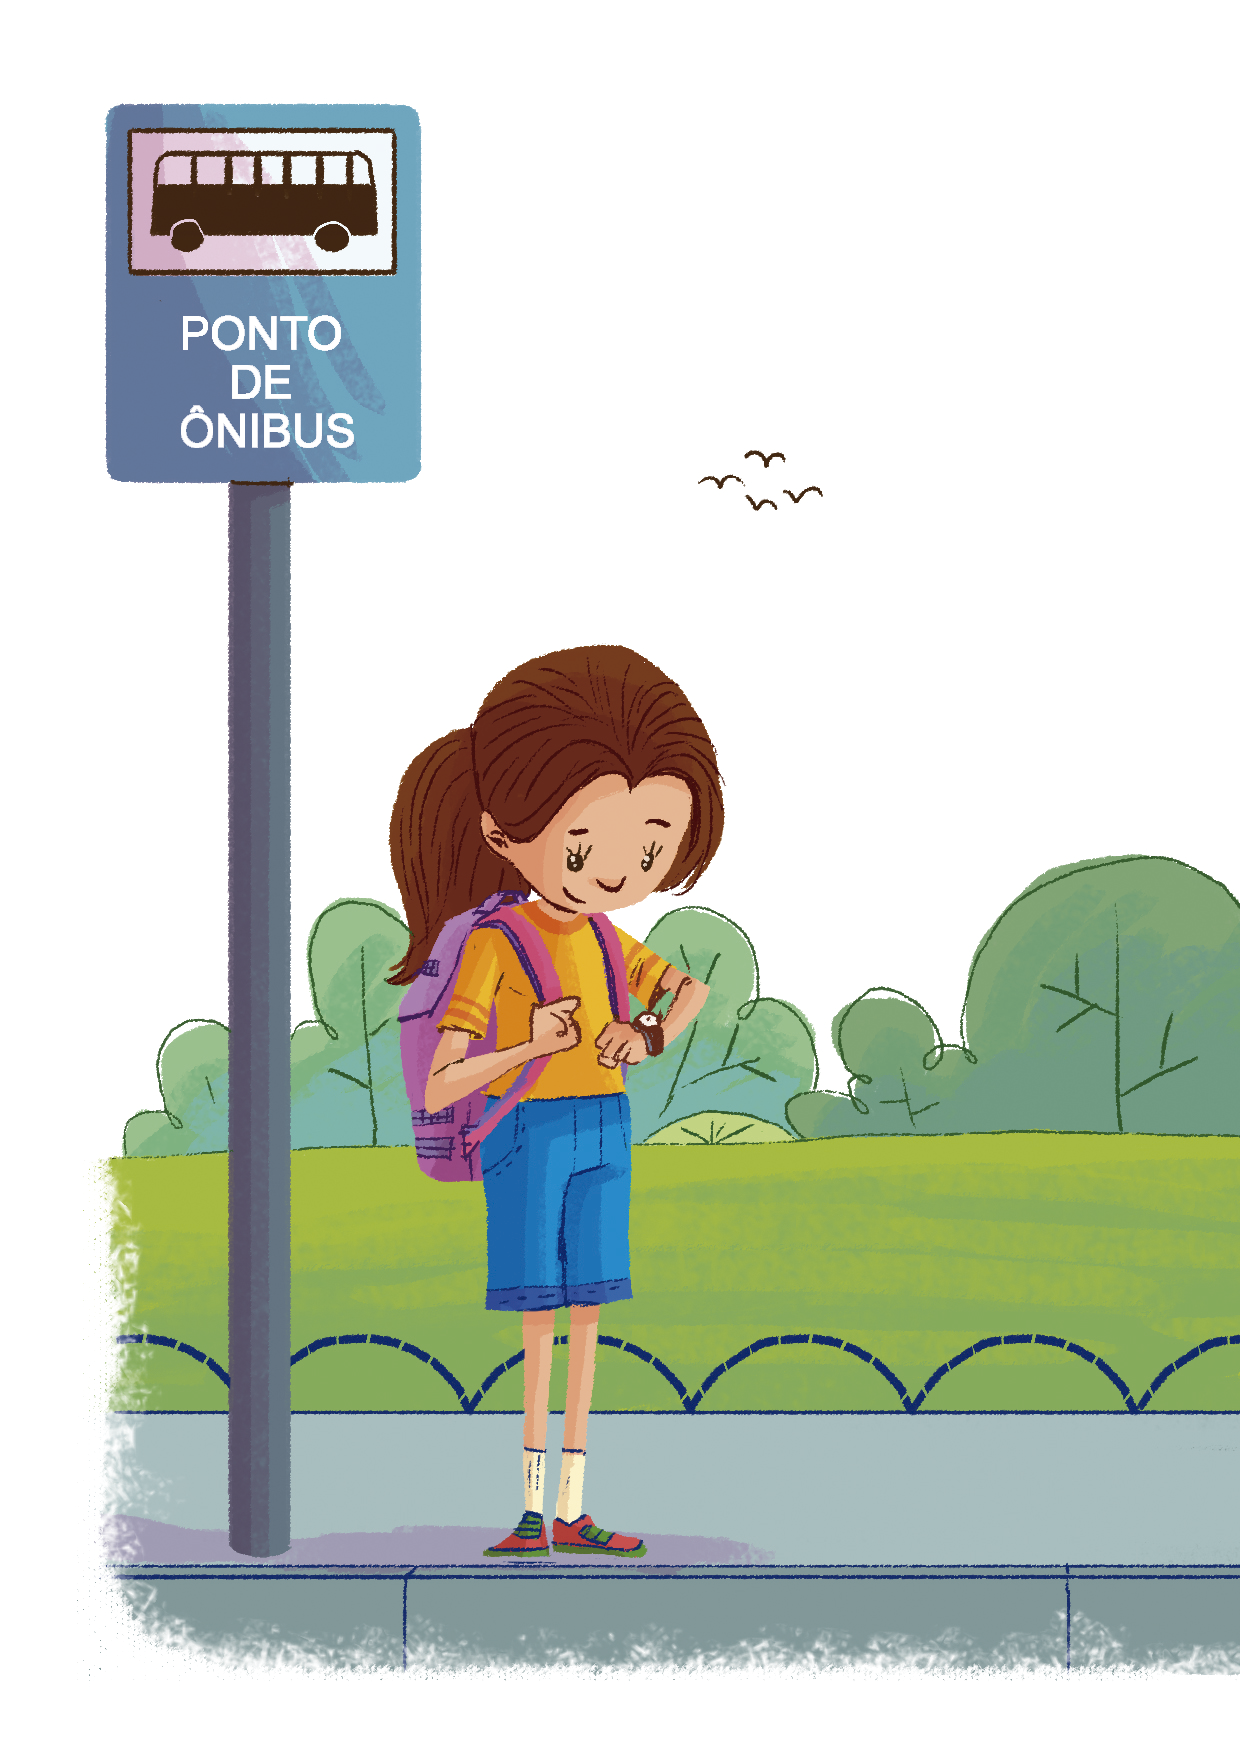 Ilustração. Menina branca de cabelos castanhos compridos, com uma mochila rosa nas costas. Ela veste camiseta laranja e bermuda azul, está olhando para o relógio em seu pulso. Ela está em pé, na calçada, ao lado de uma placa de ponto de ônibus.